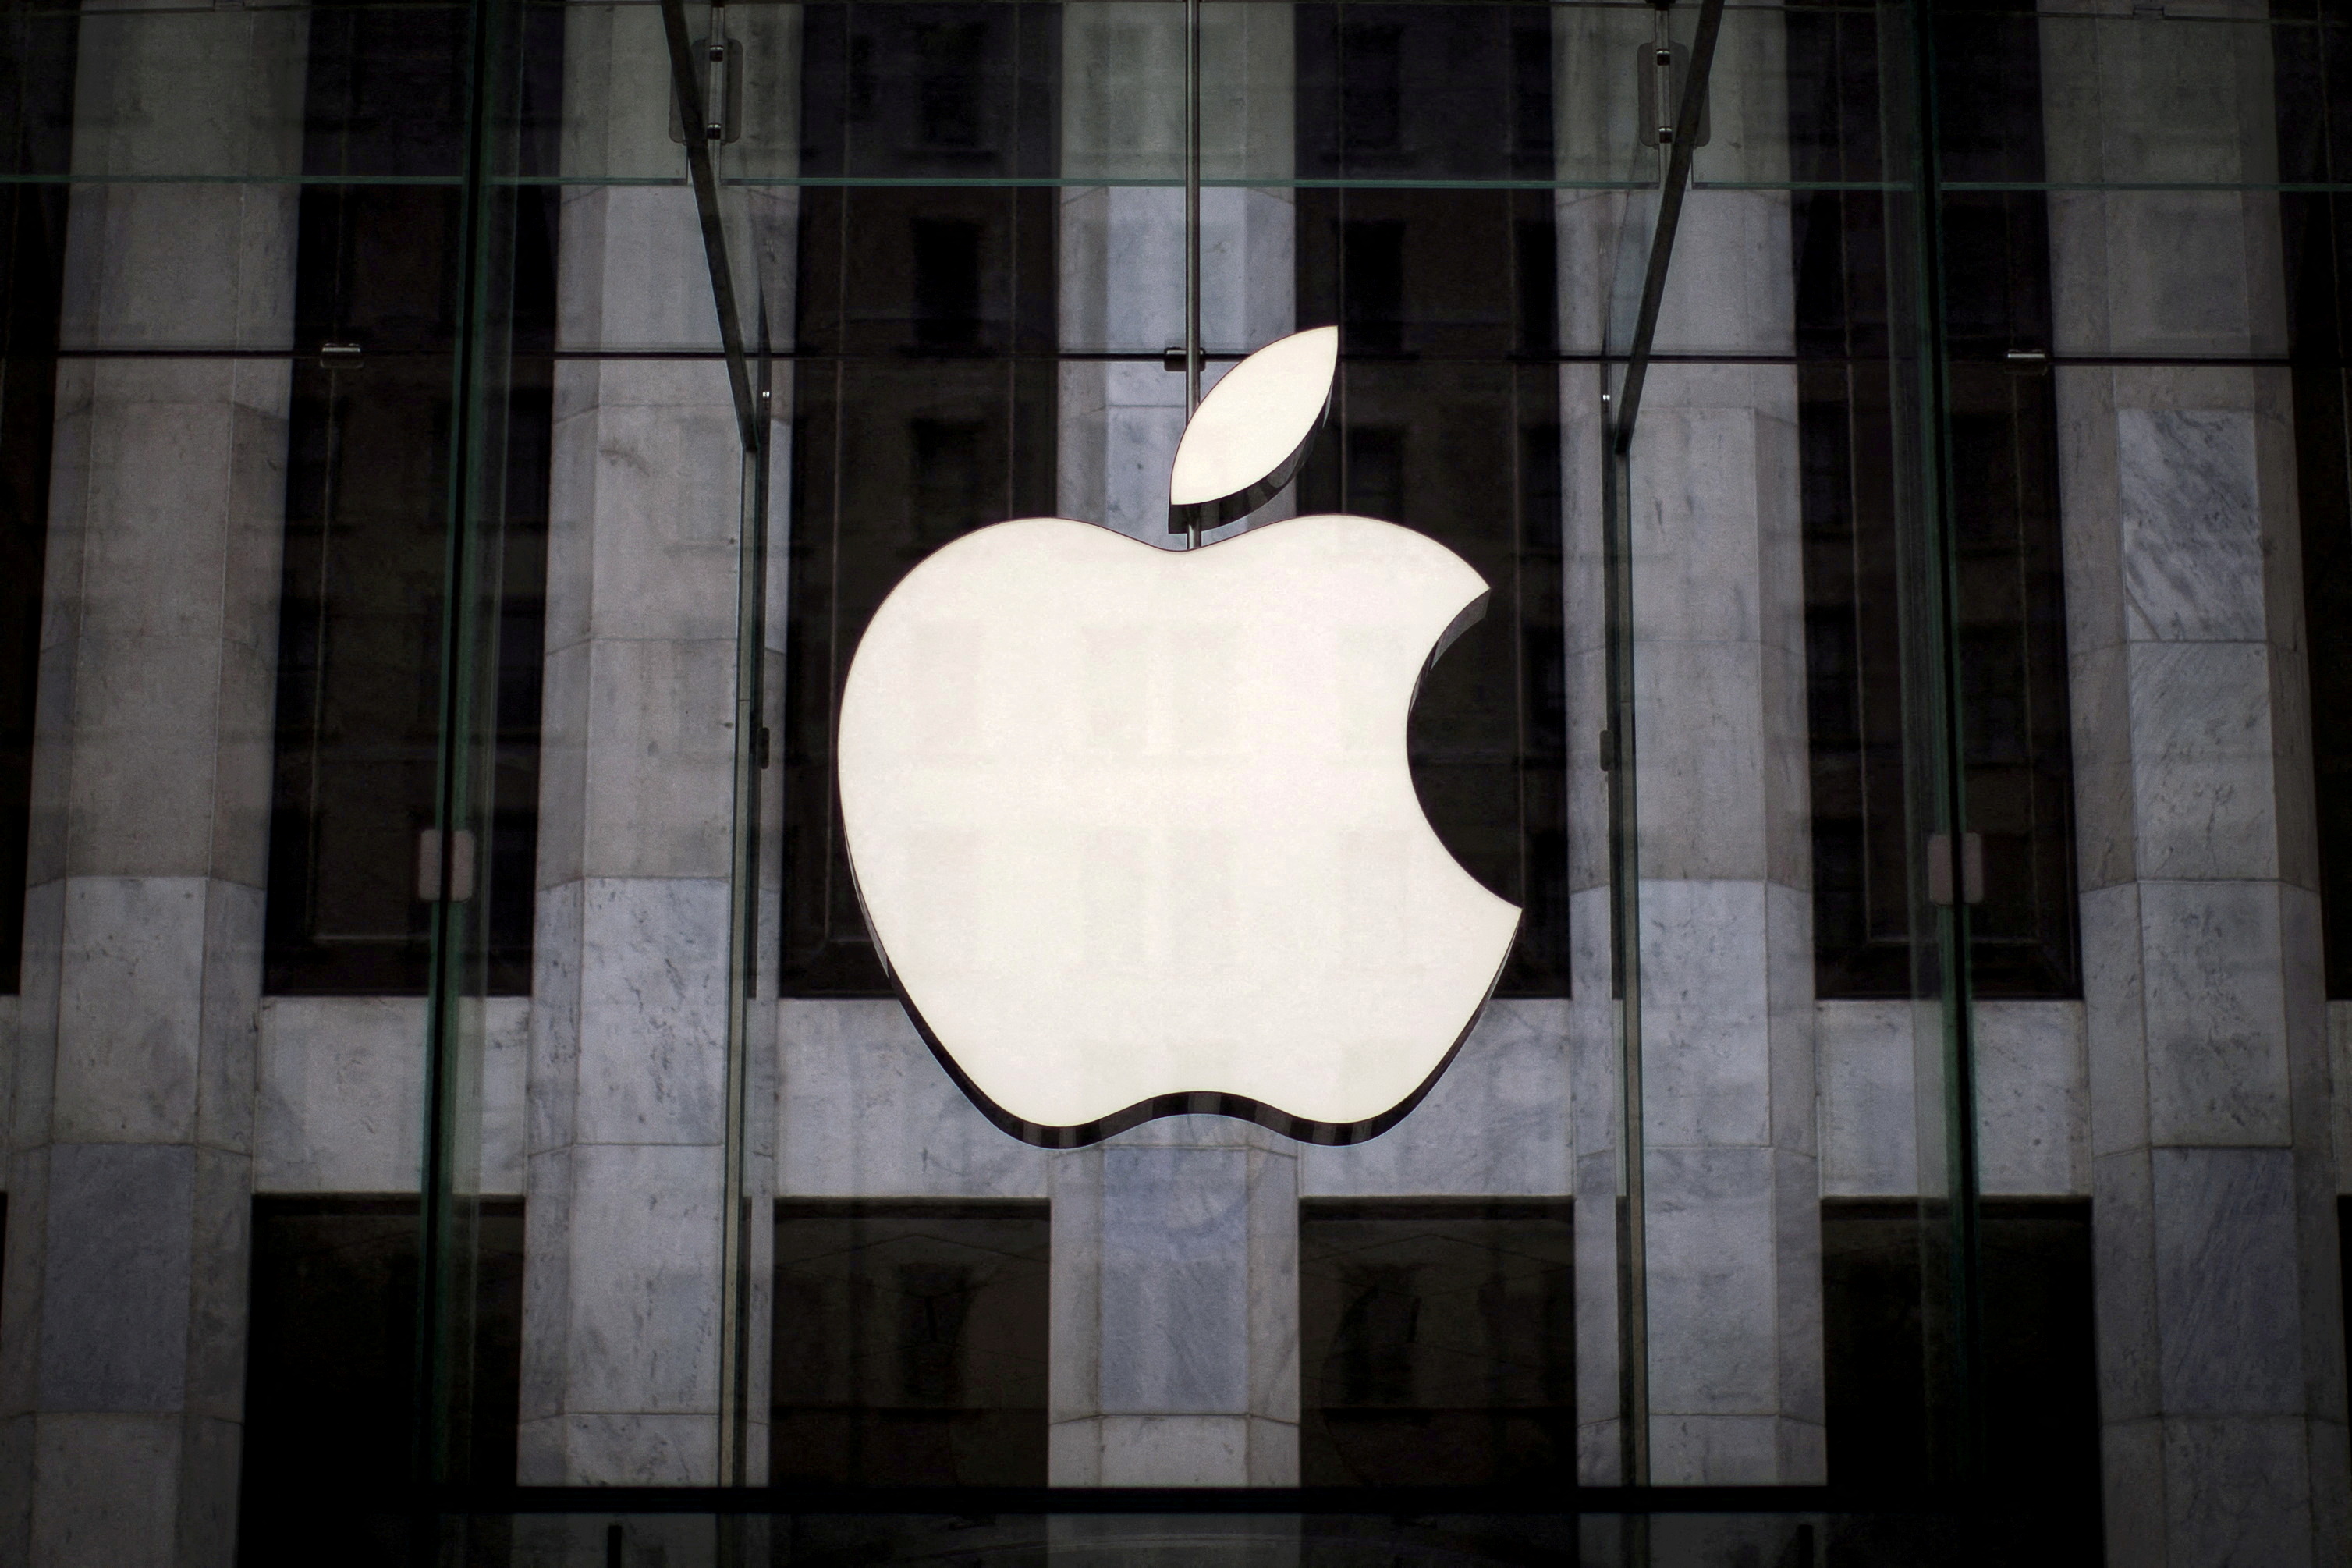 Cybersécurité : une faille permet aux hackers de contrôler iPhone, iPad et Mac, selon Apple